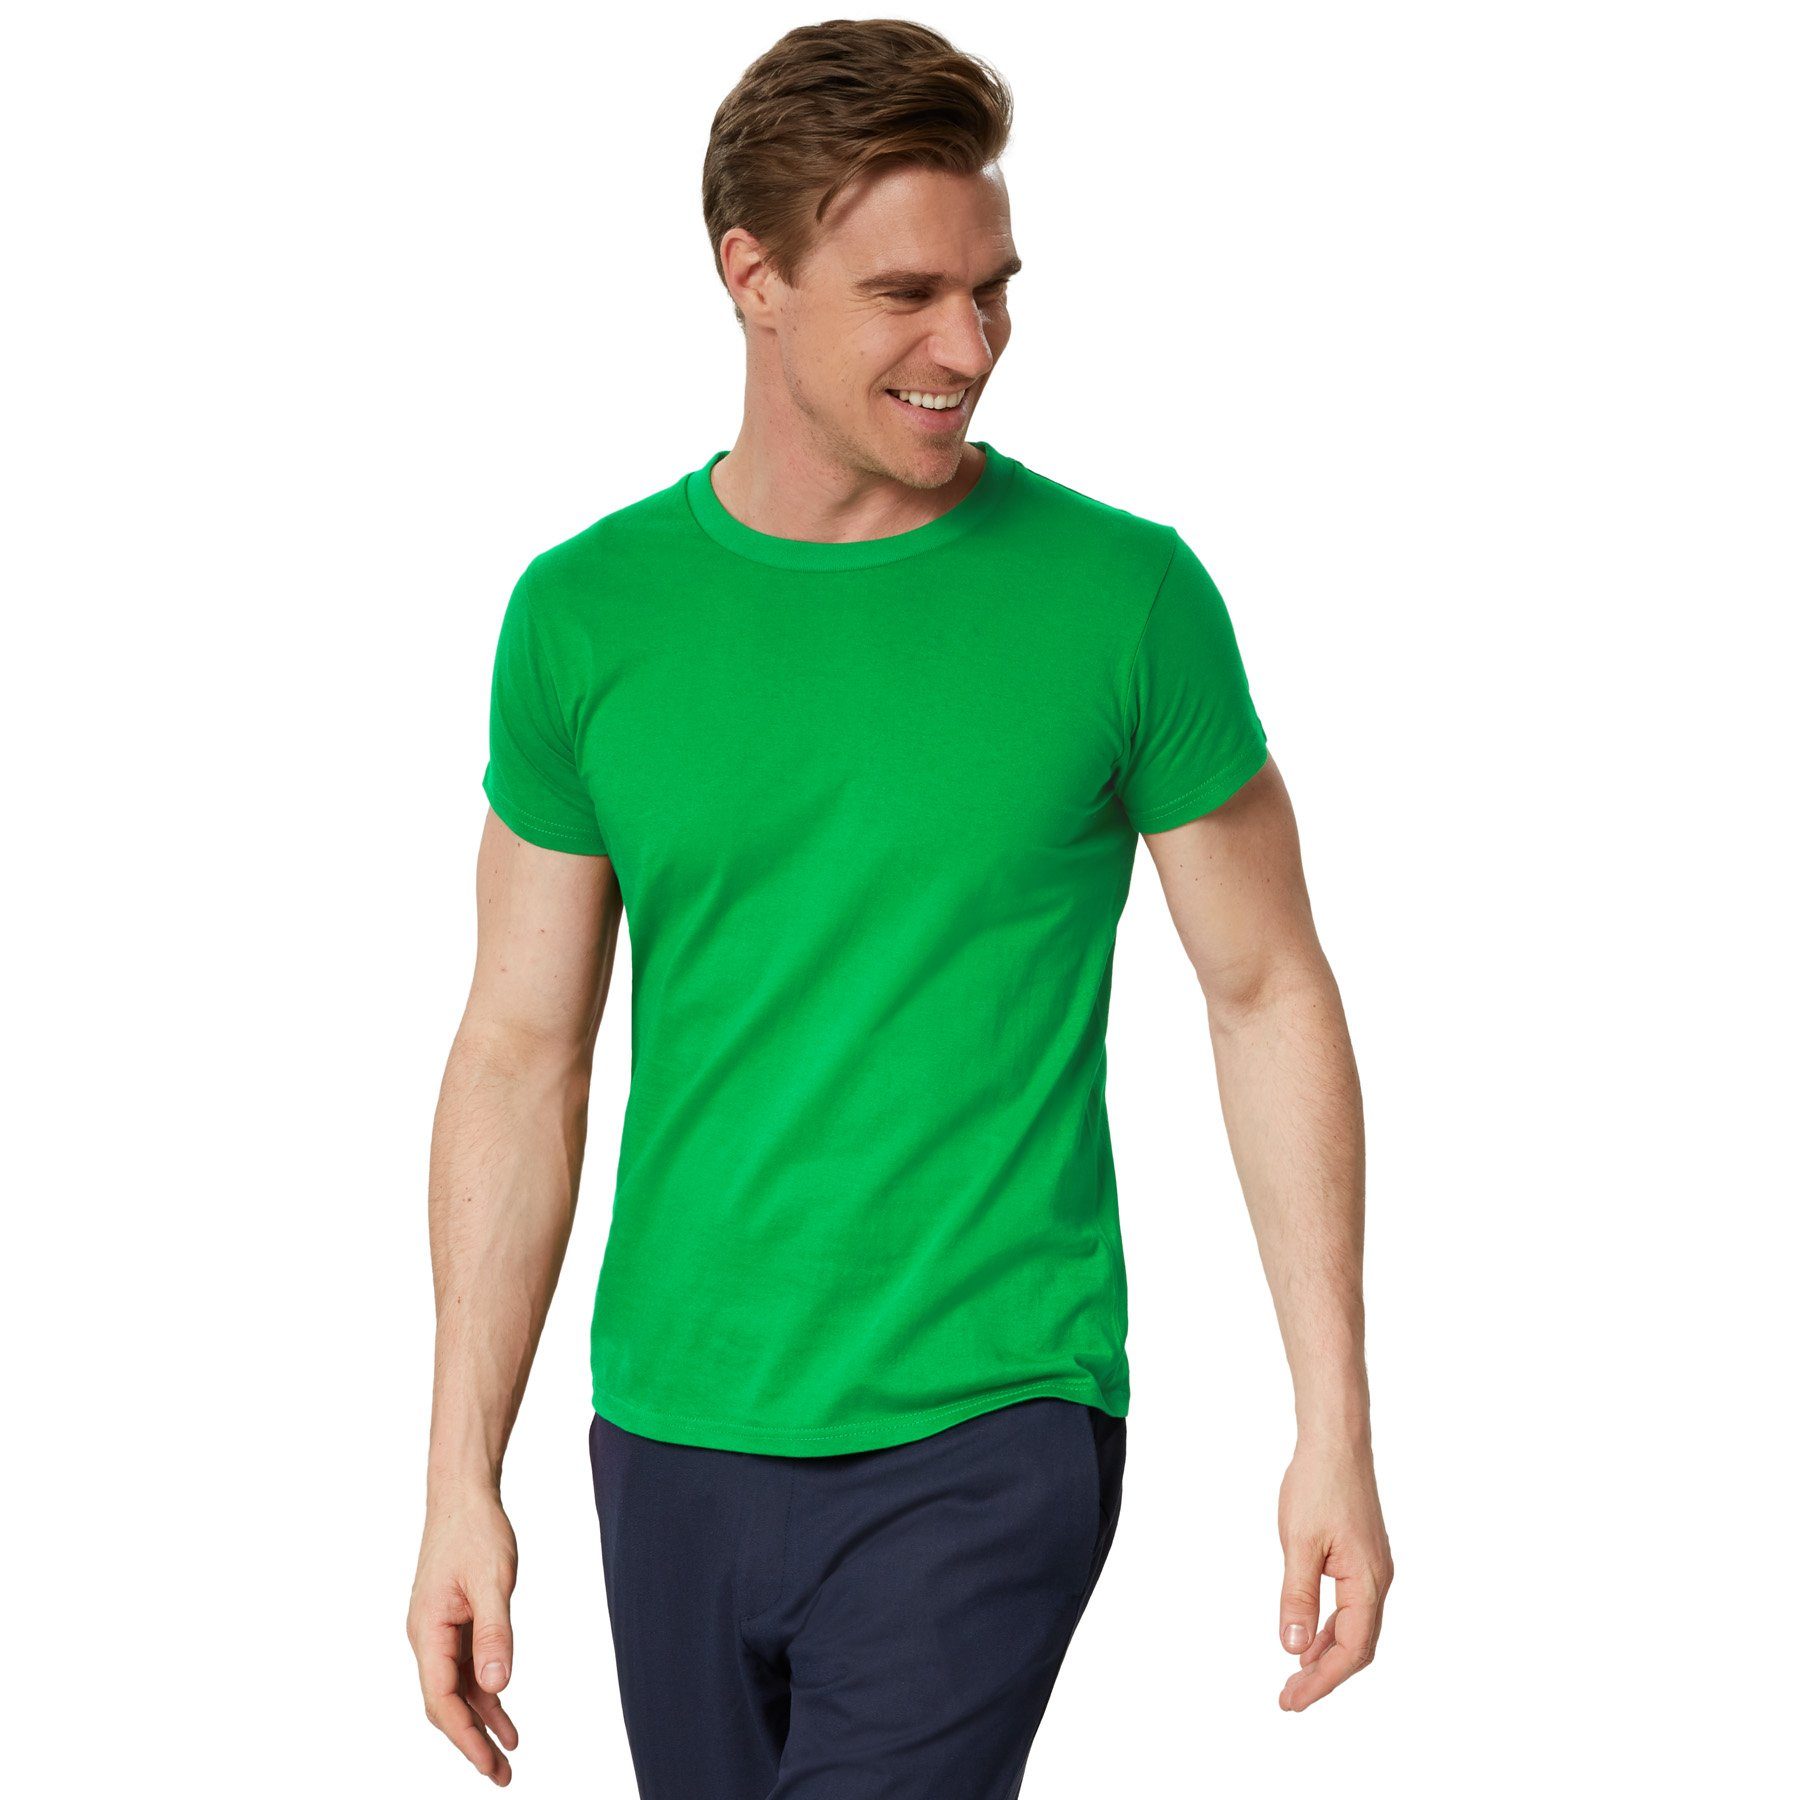 dressforfun T-Shirt T-Shirt Männer Rundhals grün